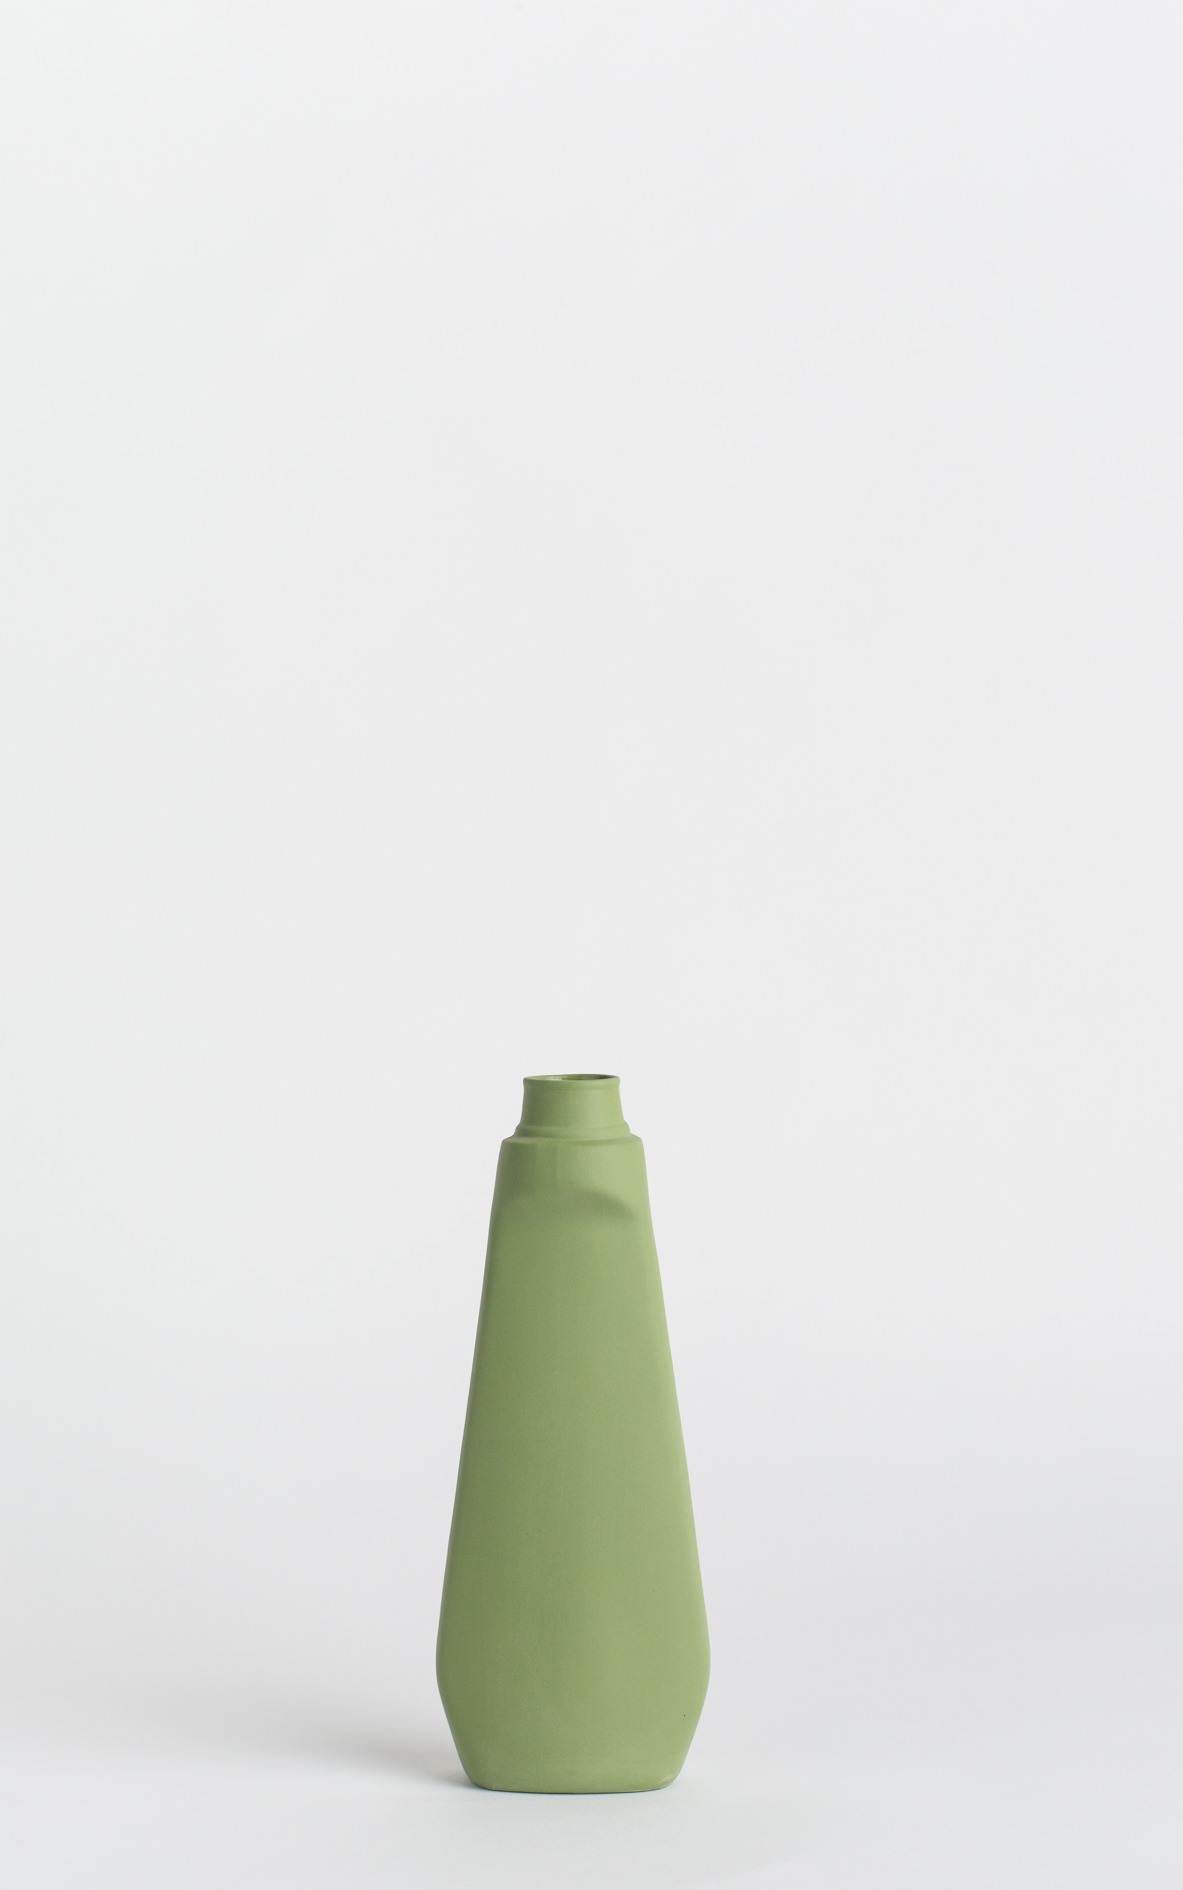 bottle vase #4 dark green